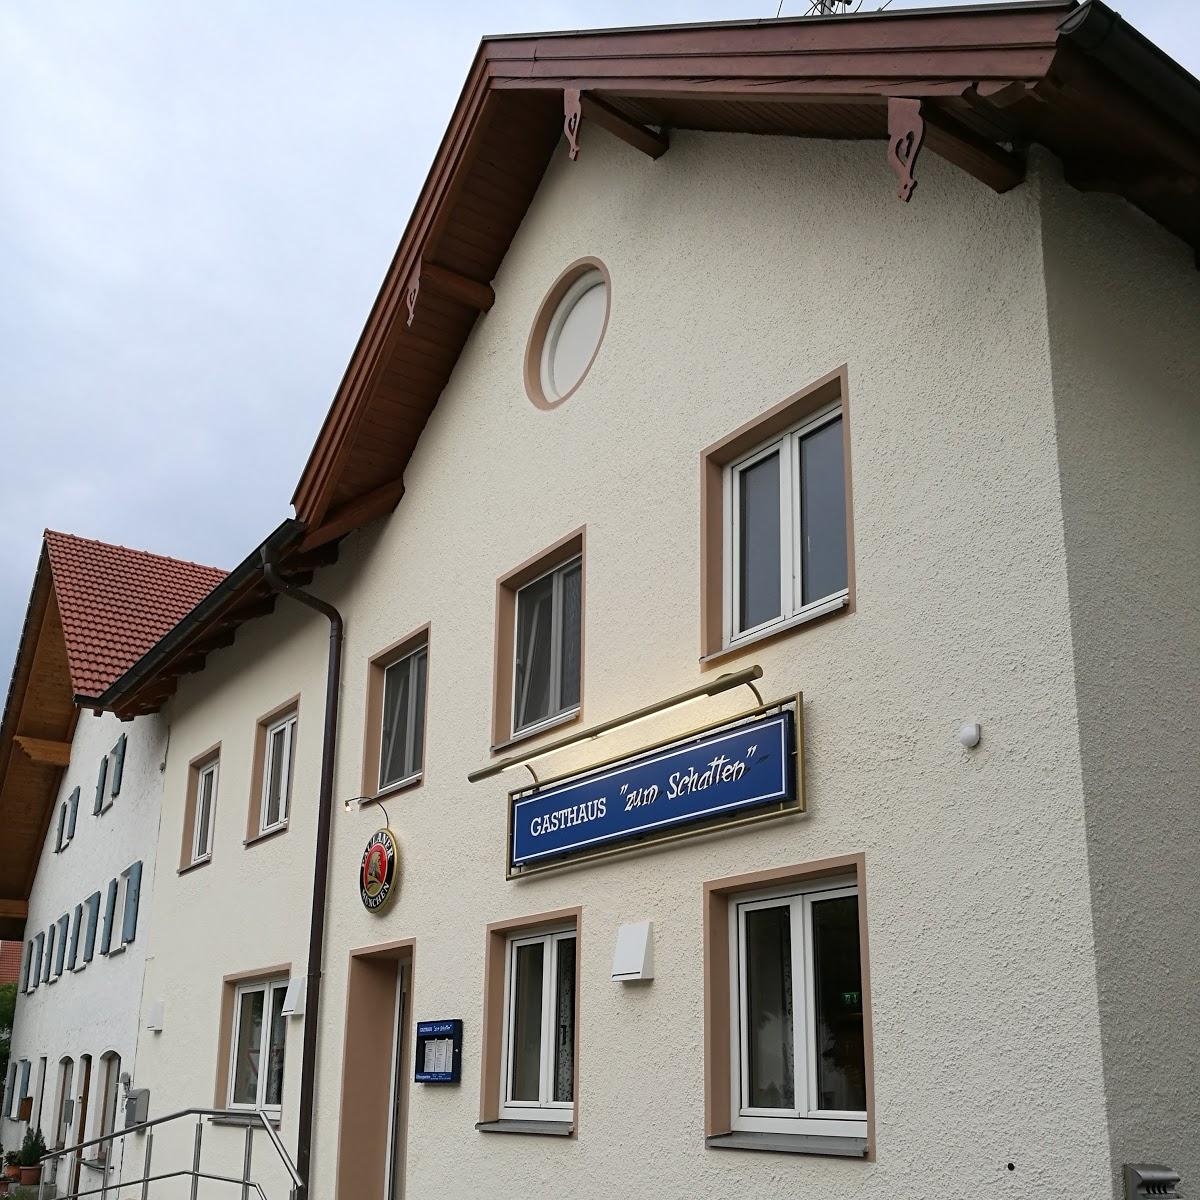 Restaurant "Pfarrstadl" in  Stetten